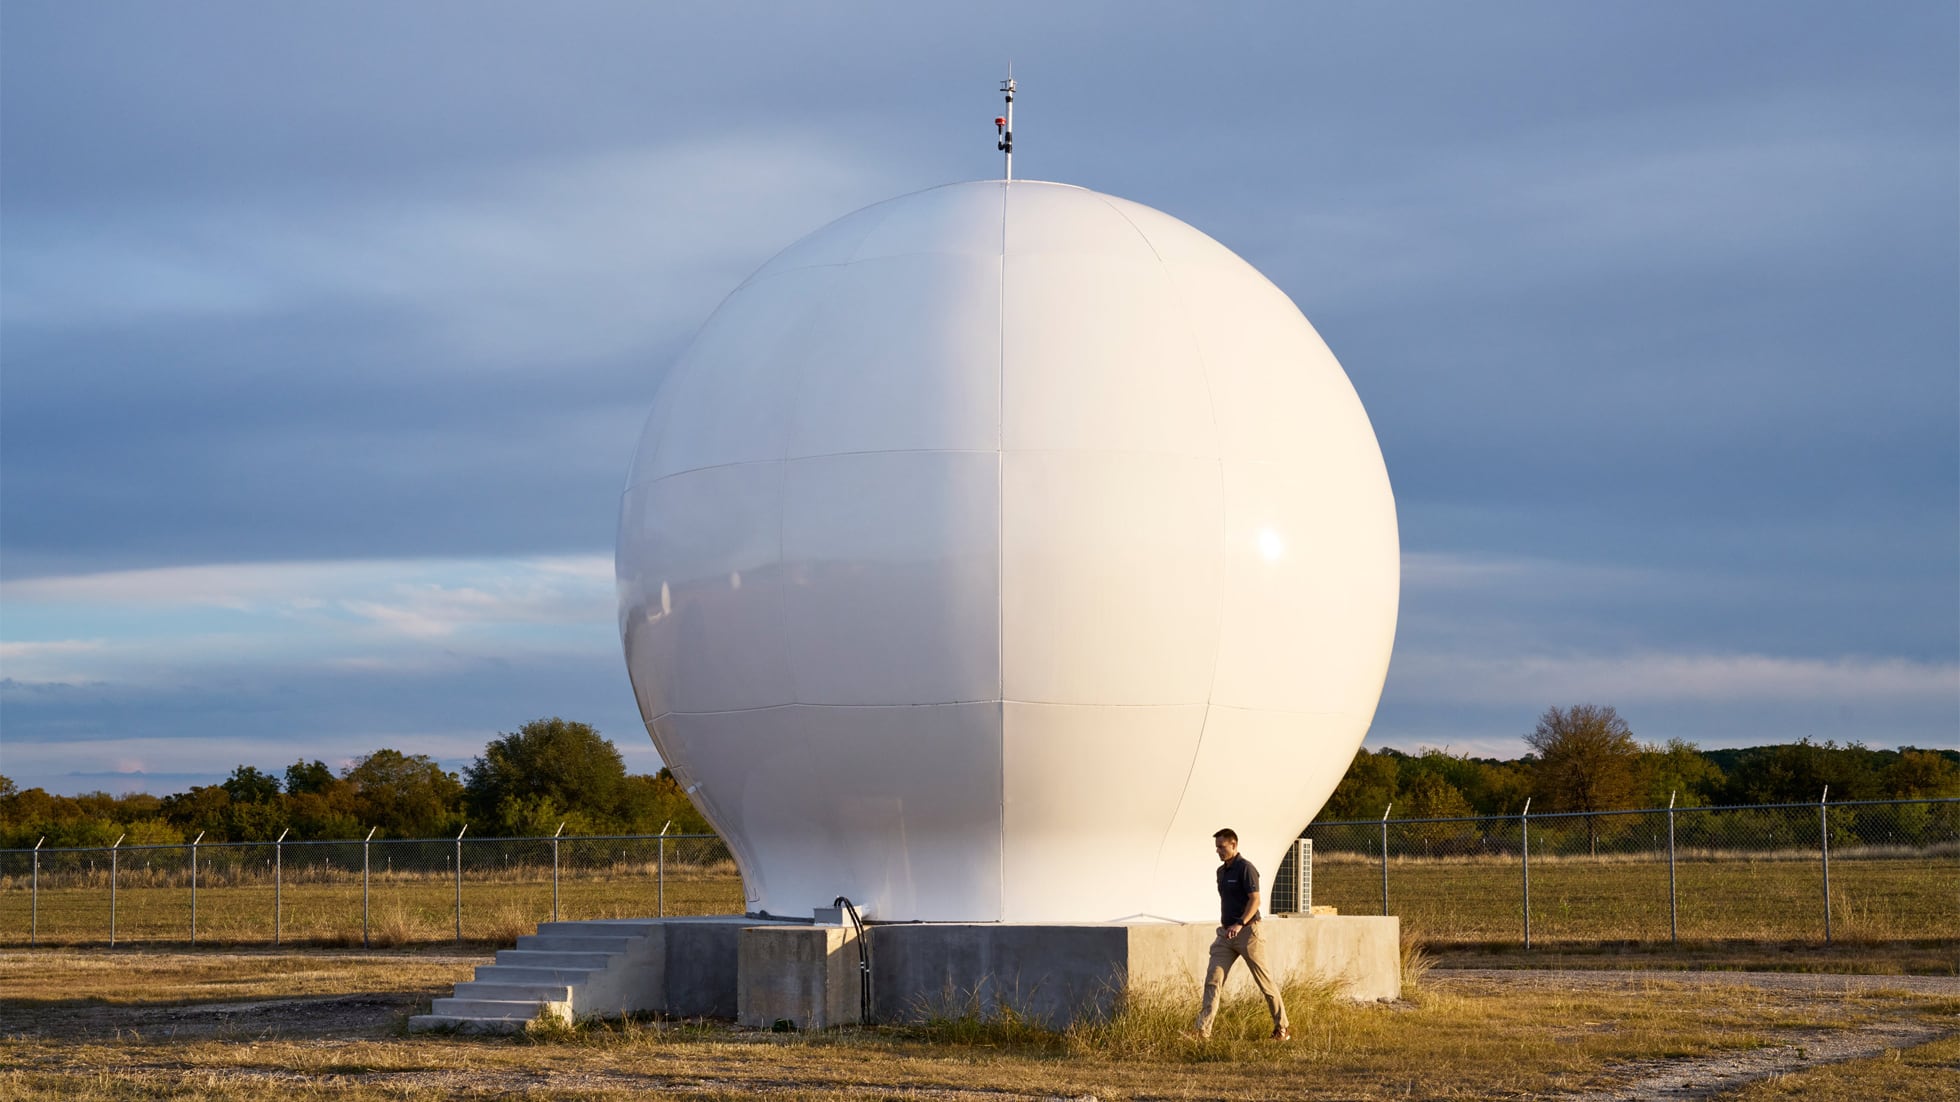 Nahaufnahme einer Globalstar-Satellitenkommunikations-Bodenstation